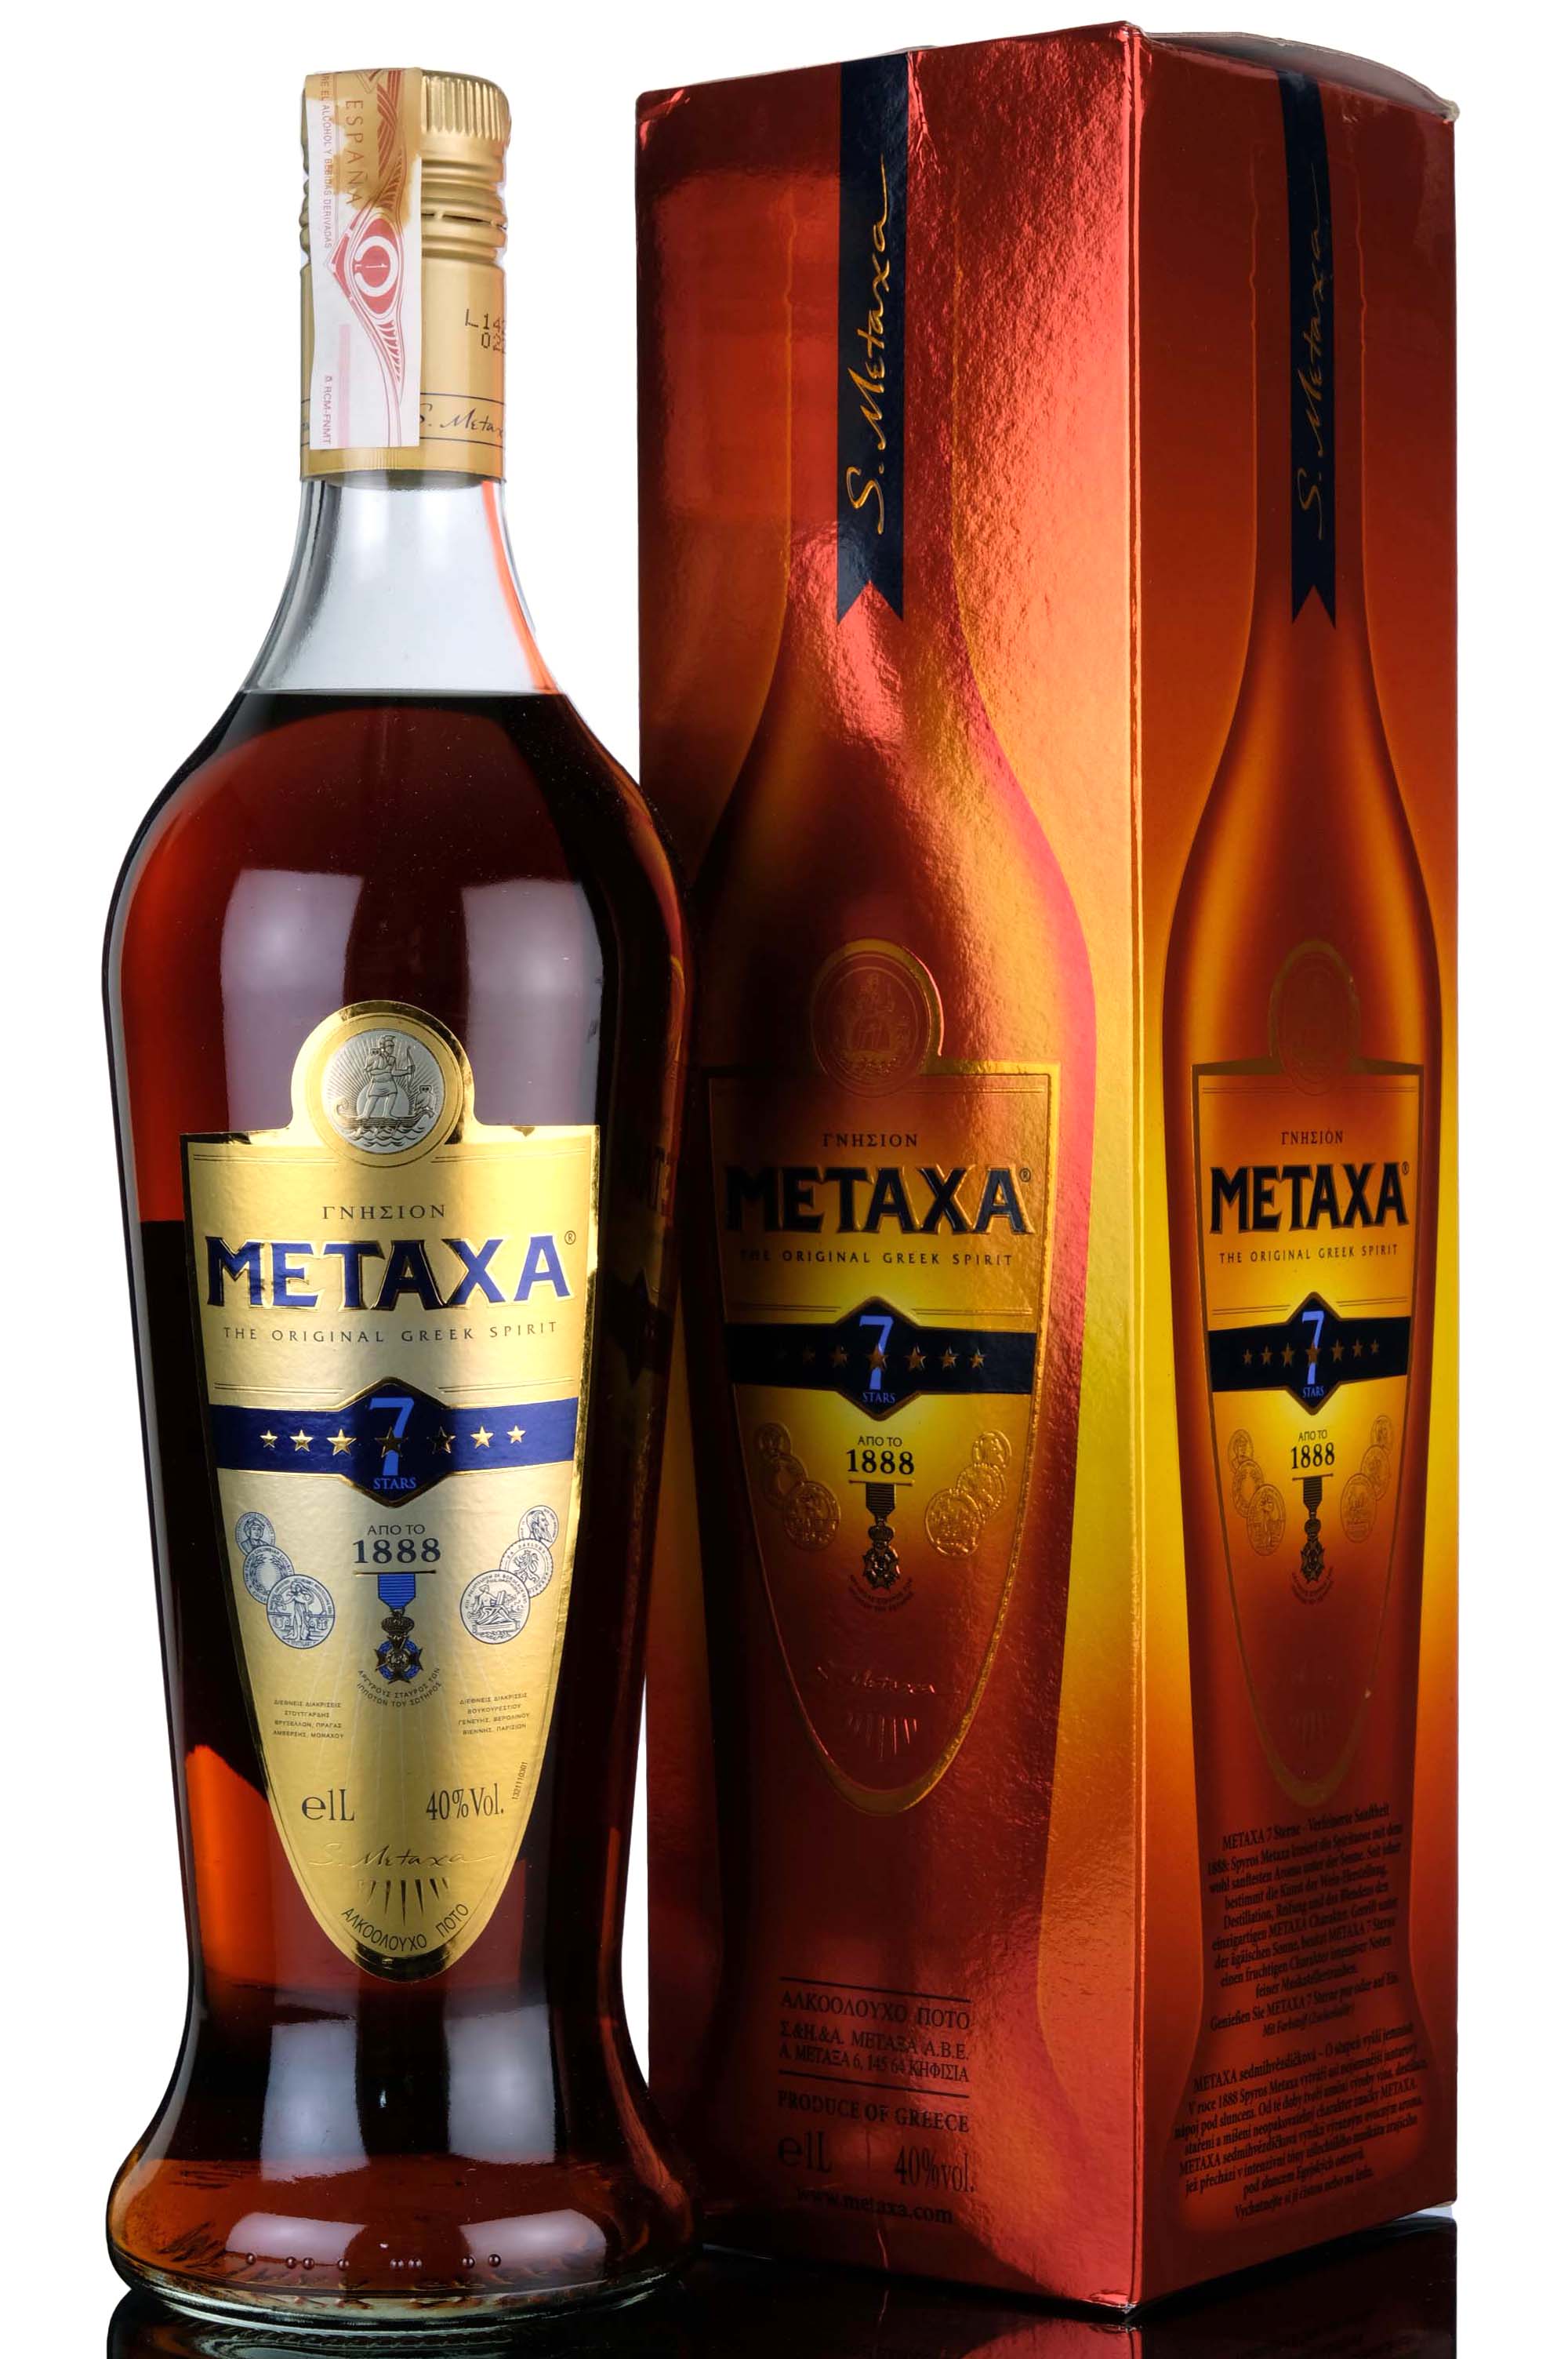 Metaxa 7 Star Greek Brandy - 1 Litre